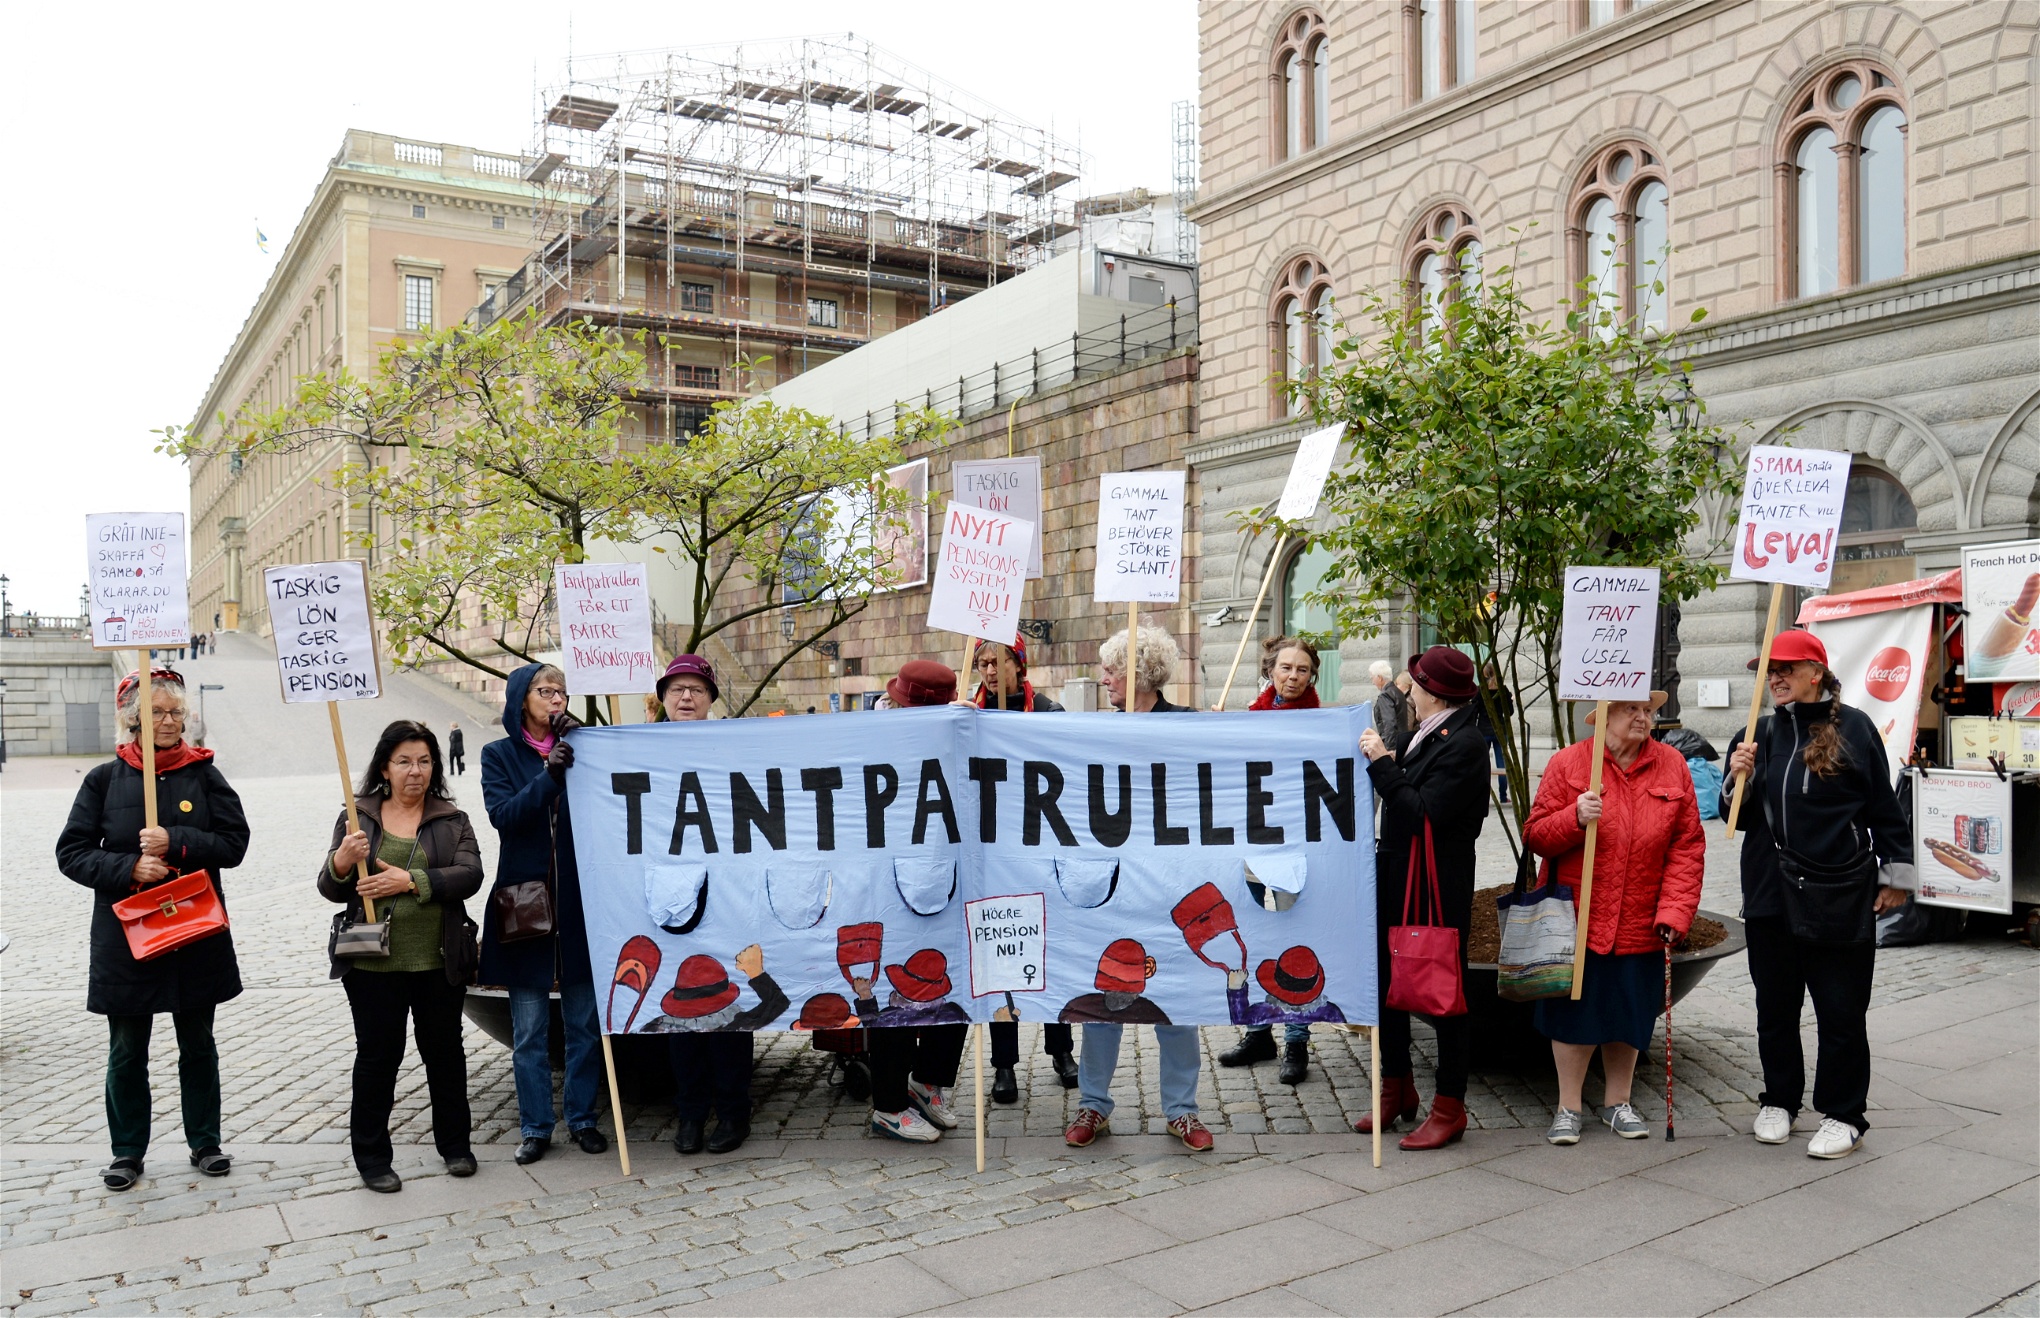 Stockholms tantpatrull demonsterar för ett nytt pensionssystem på Mynttorget, utanför riksdagen i Stockholm.